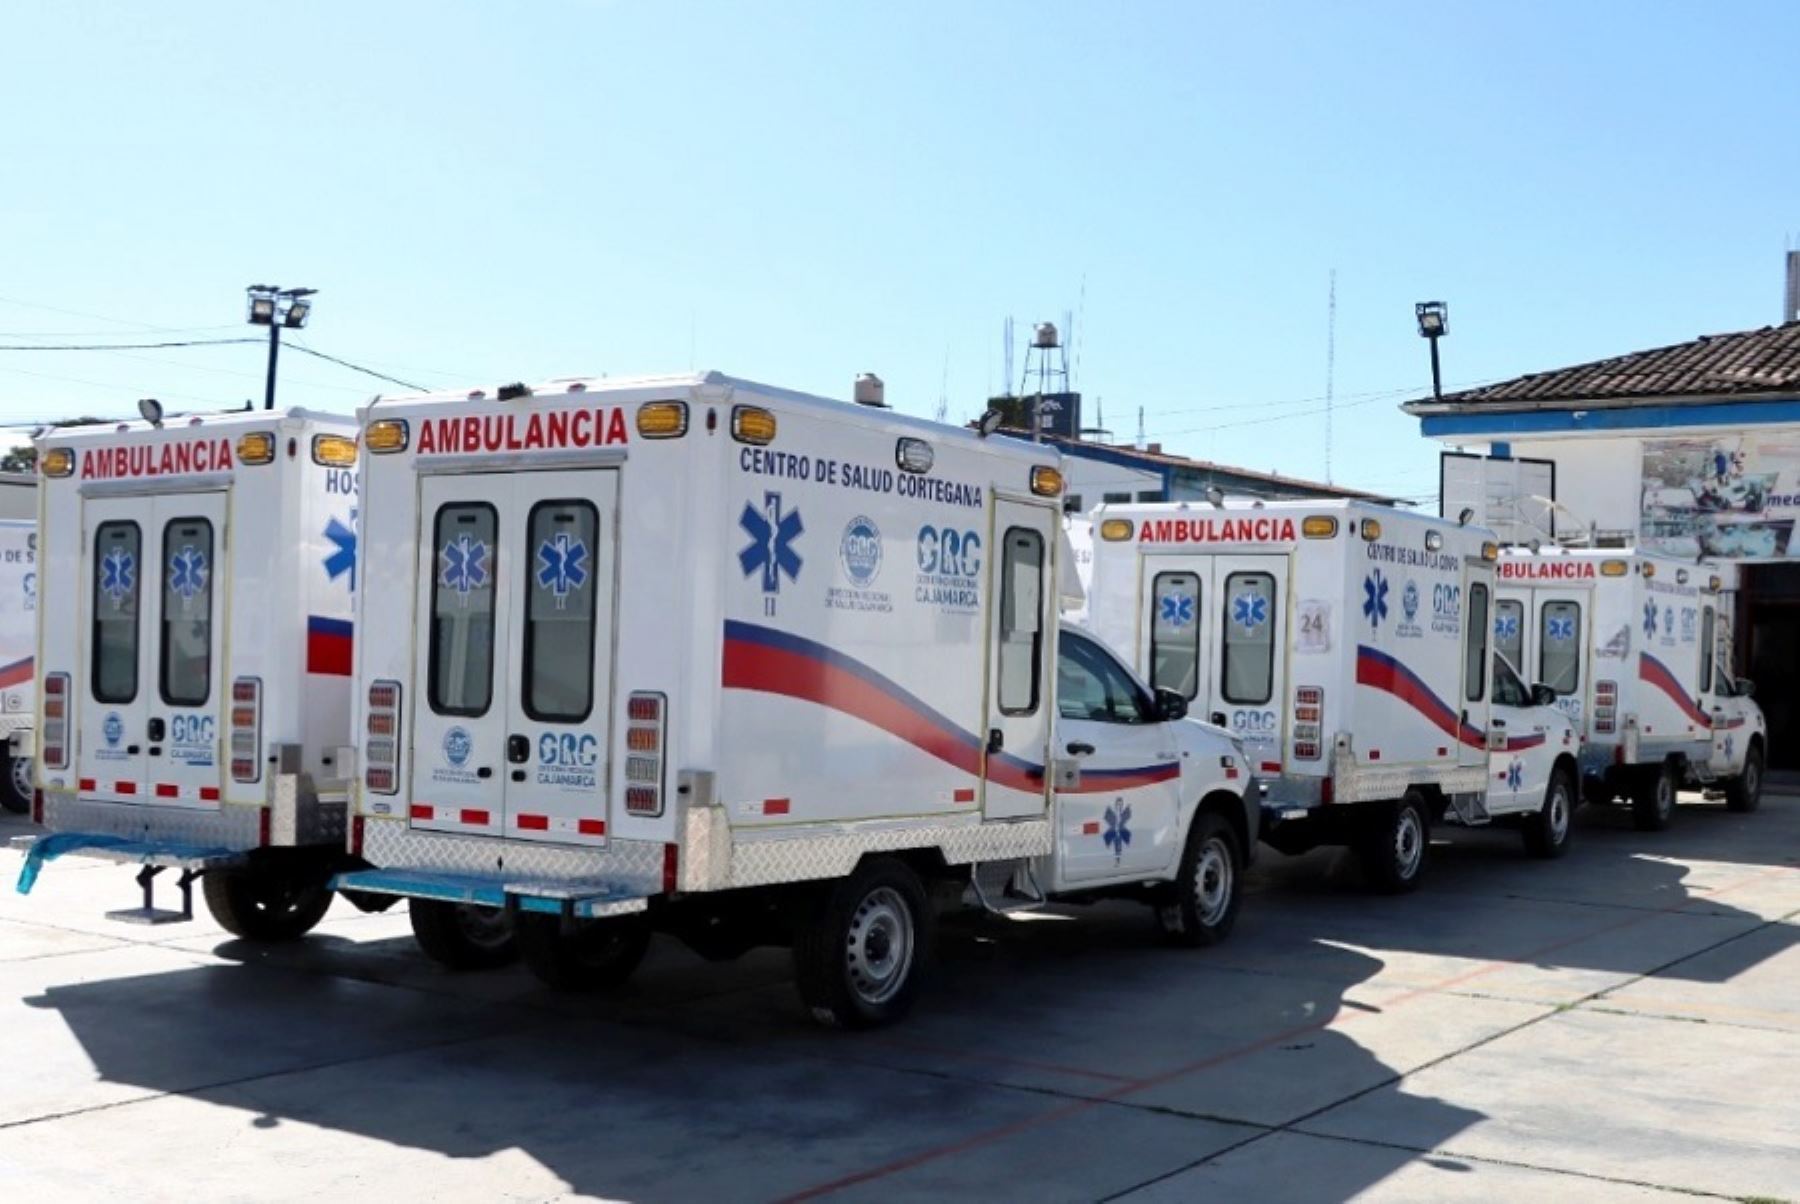 La Dirección Regional de Salud de Cajamarca, recibió 42 ambulancias adquiridas por el gobierno regional con una inversión de 15 millones de soles y que serán distribuidas en los establecimientos de salud de las 13 provincias que conforman este departamento.